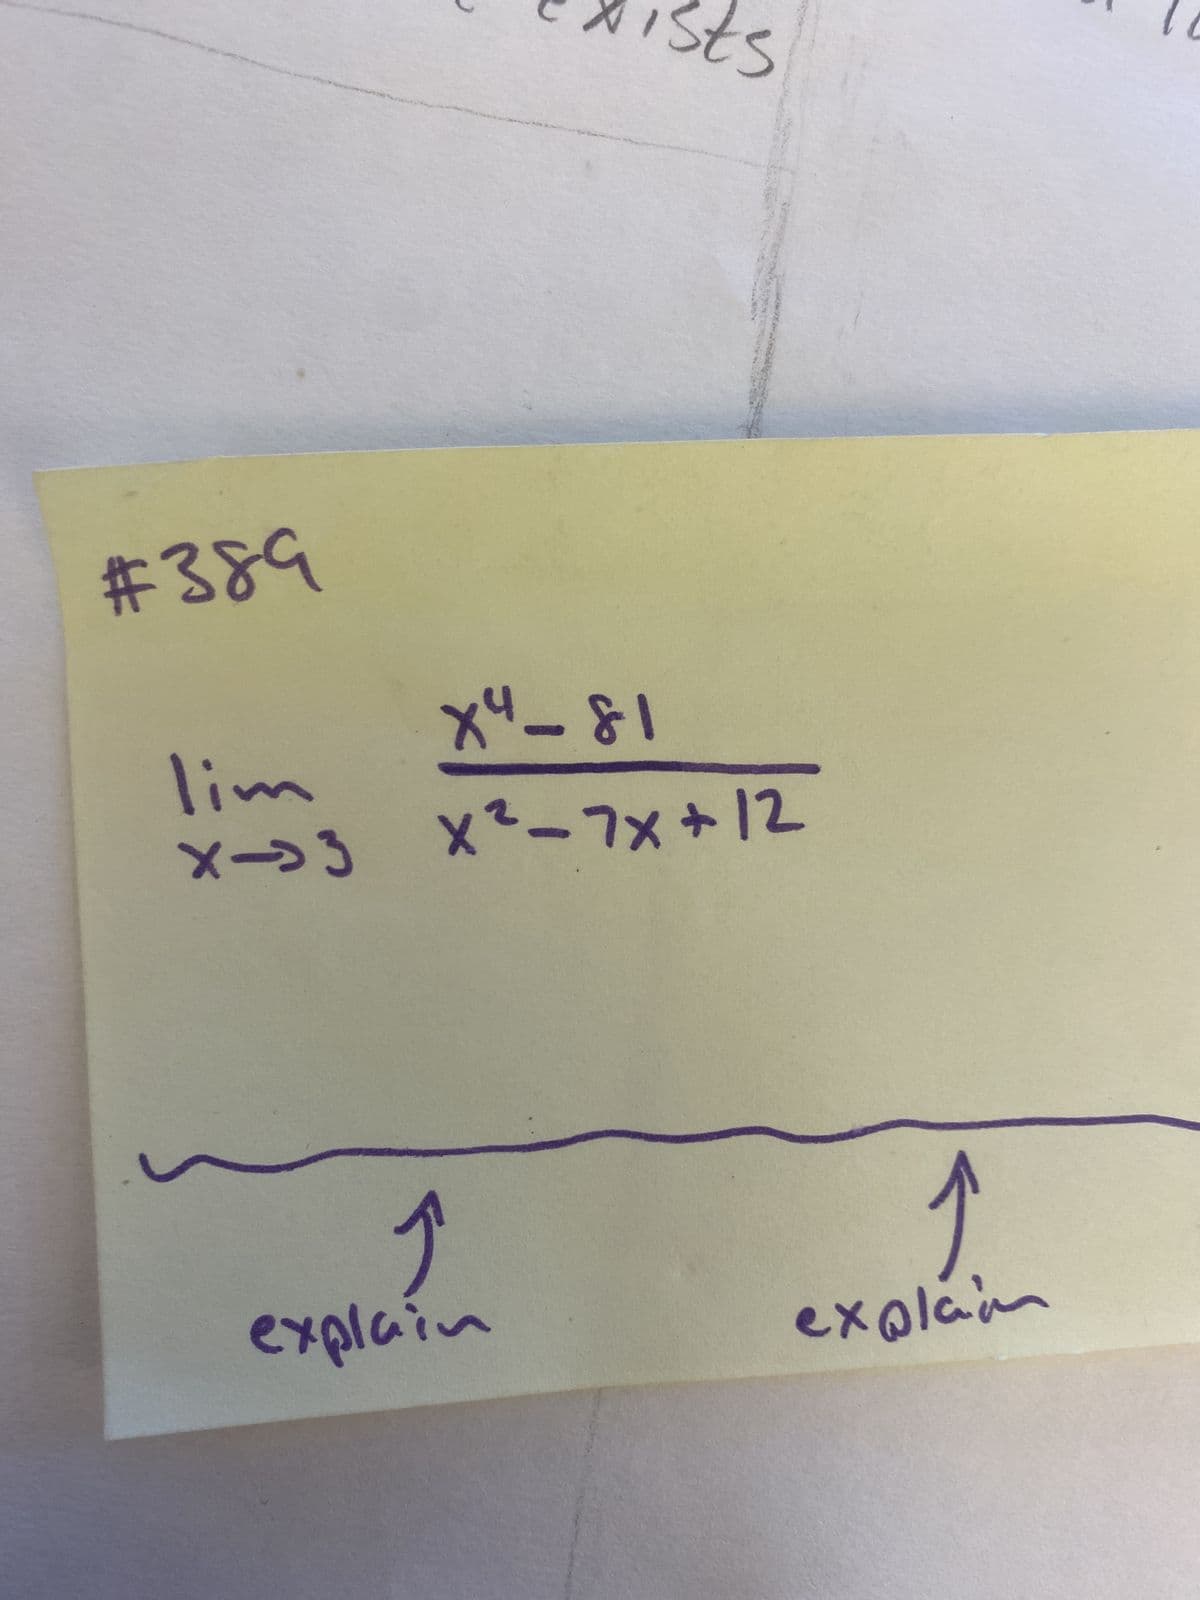 #389
ts
X4-81
lim
X->3 X²-7Xx+12
explain
explain
F